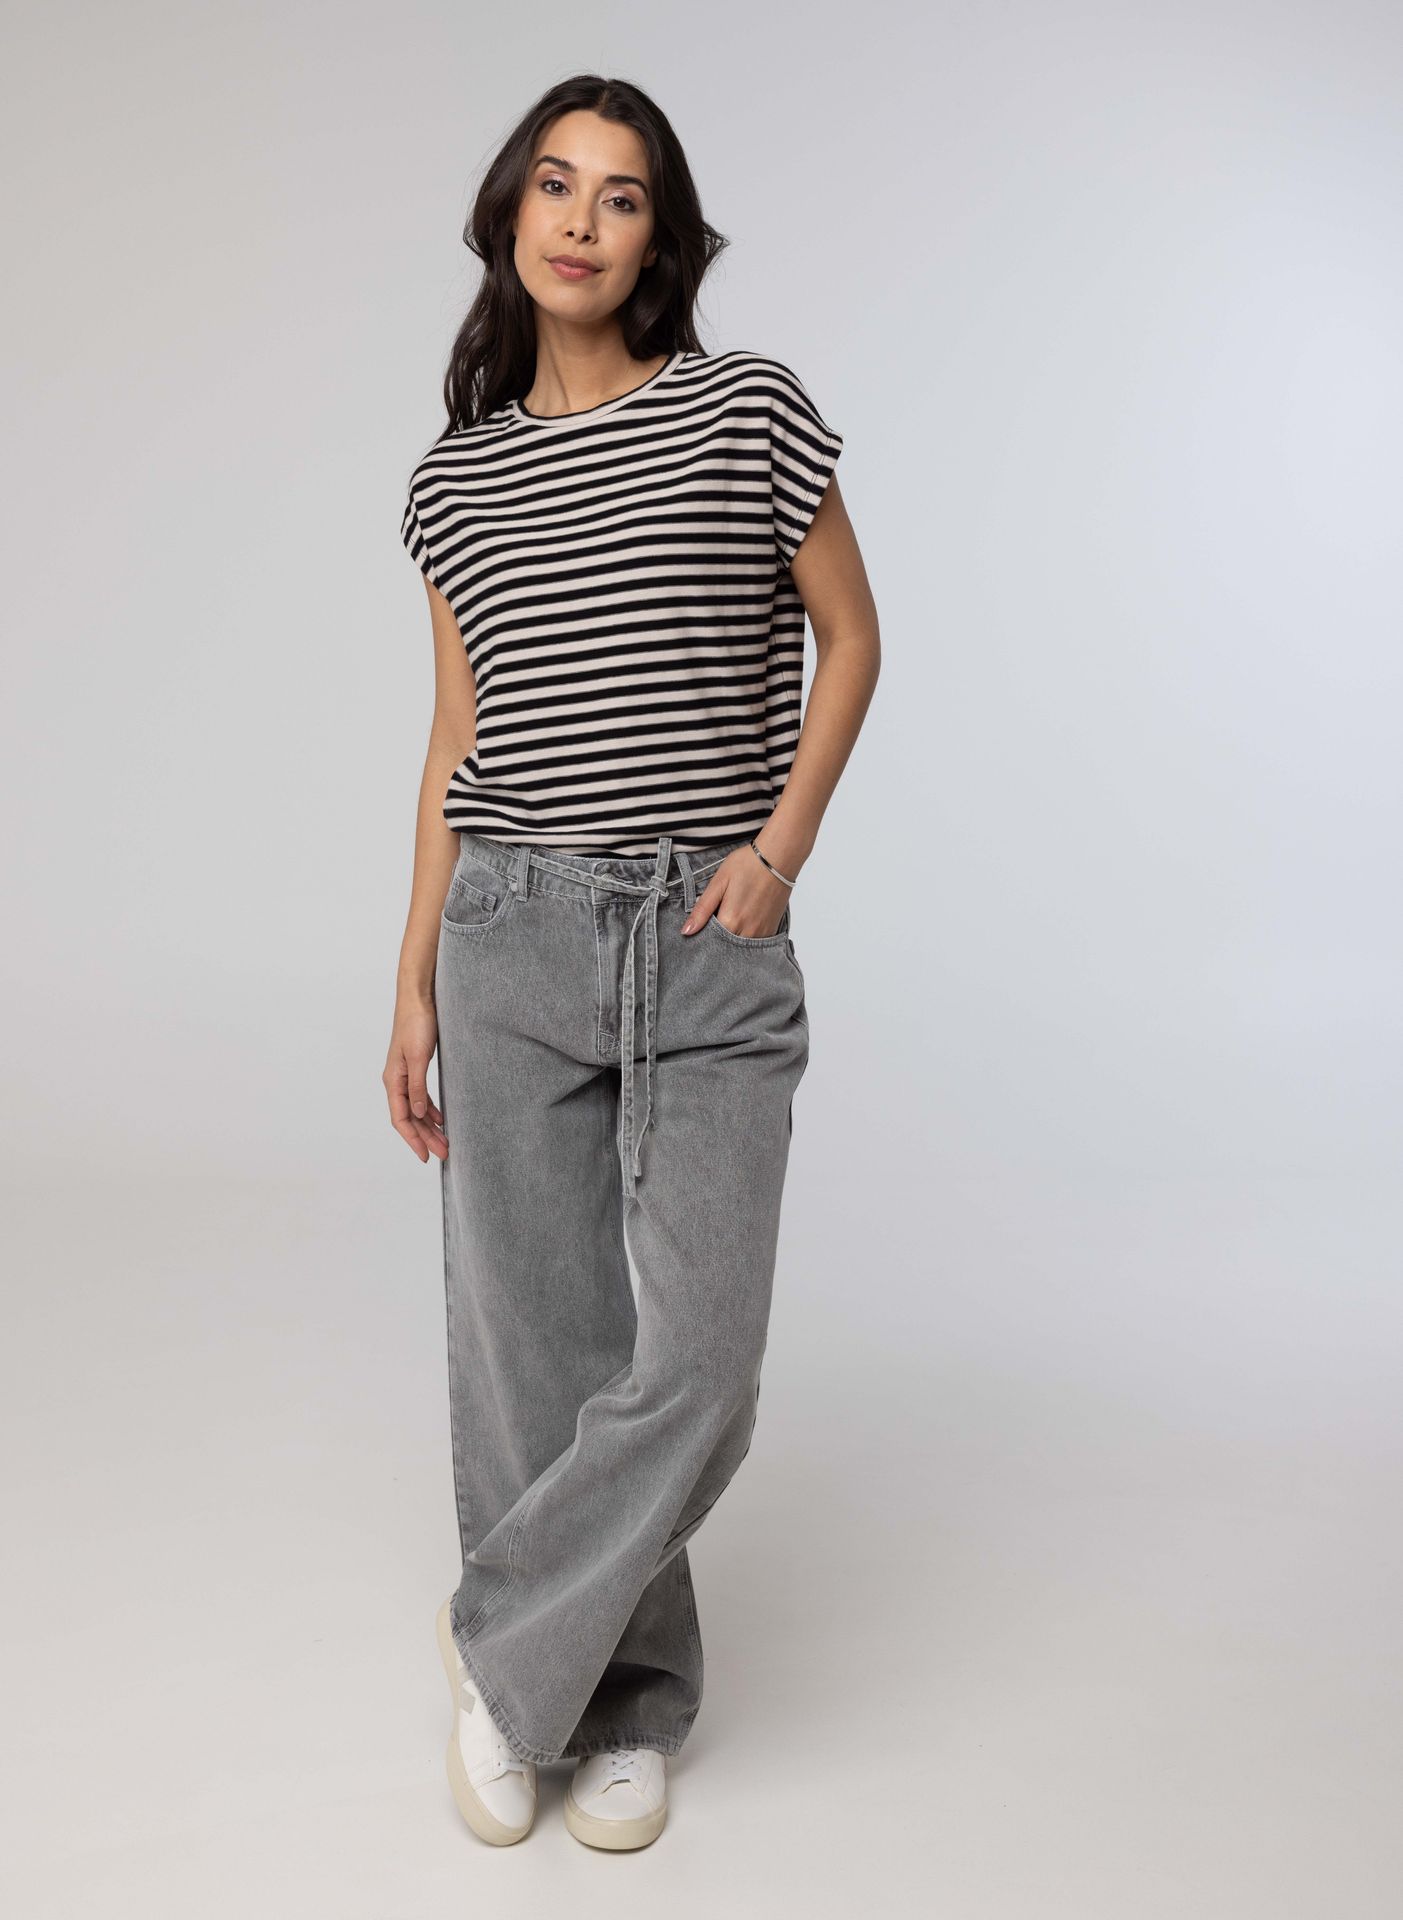 Norah Grijze jeans met strik grey 214255-045